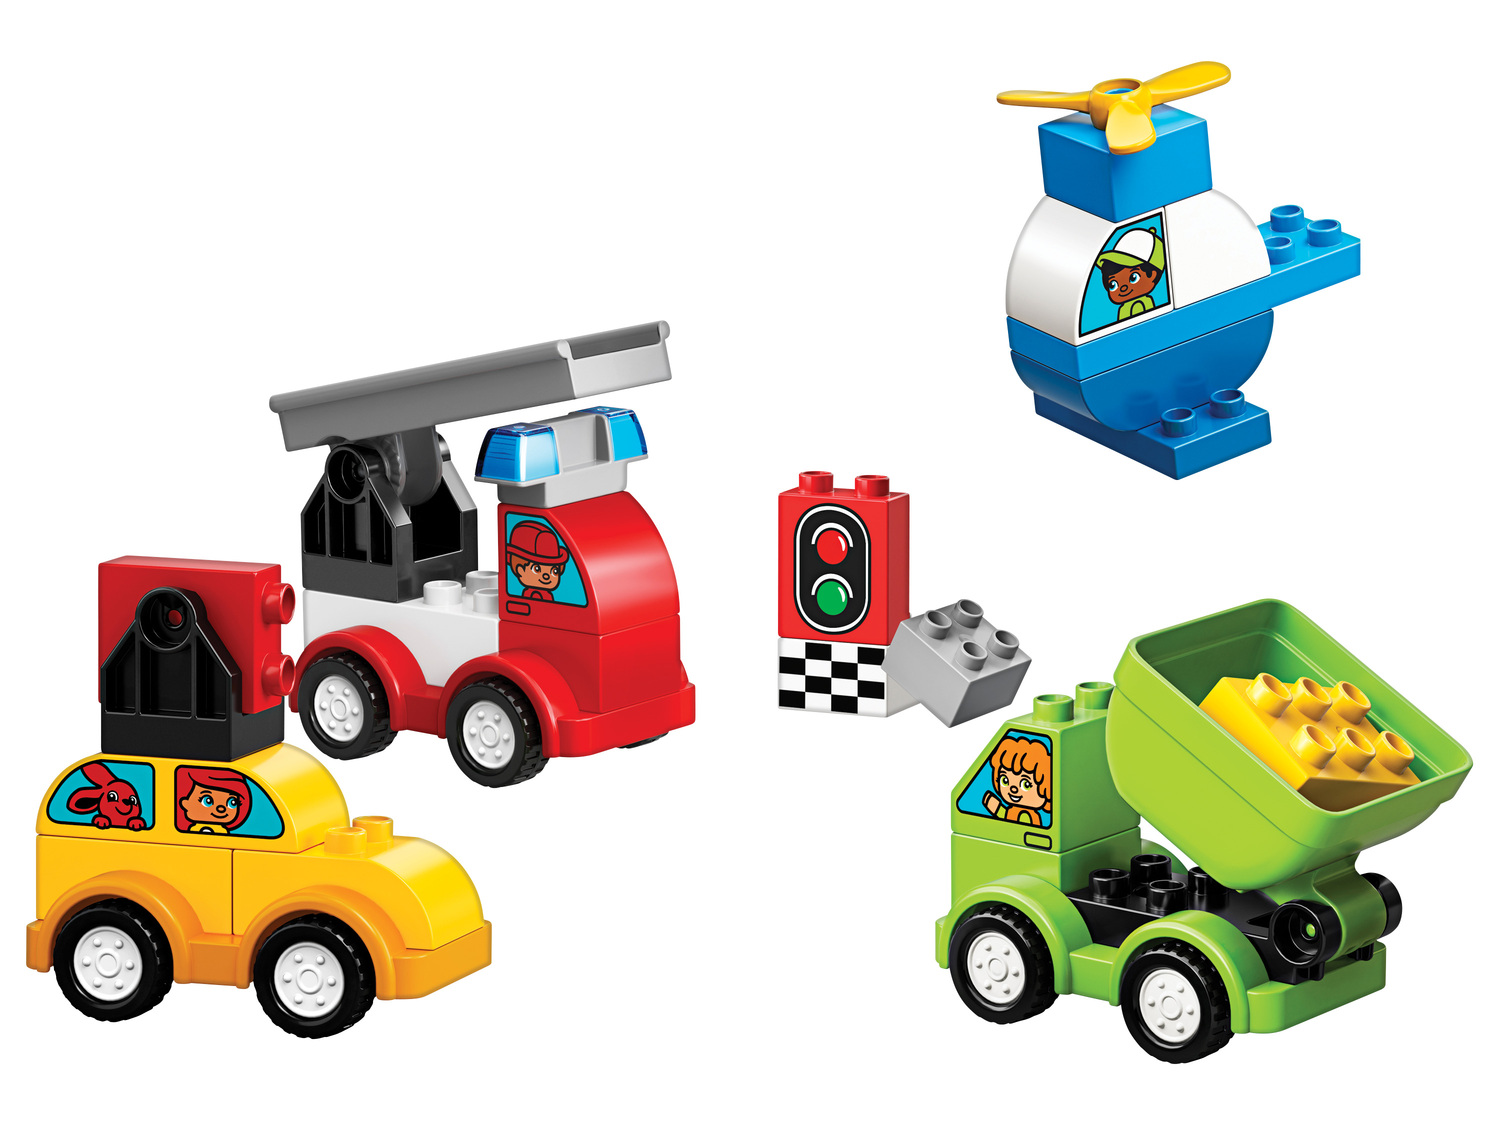 Klocki Lego 10886 Lego, cena 64,90 PLN  
-  Moje pierwsze samochodziki
Opis